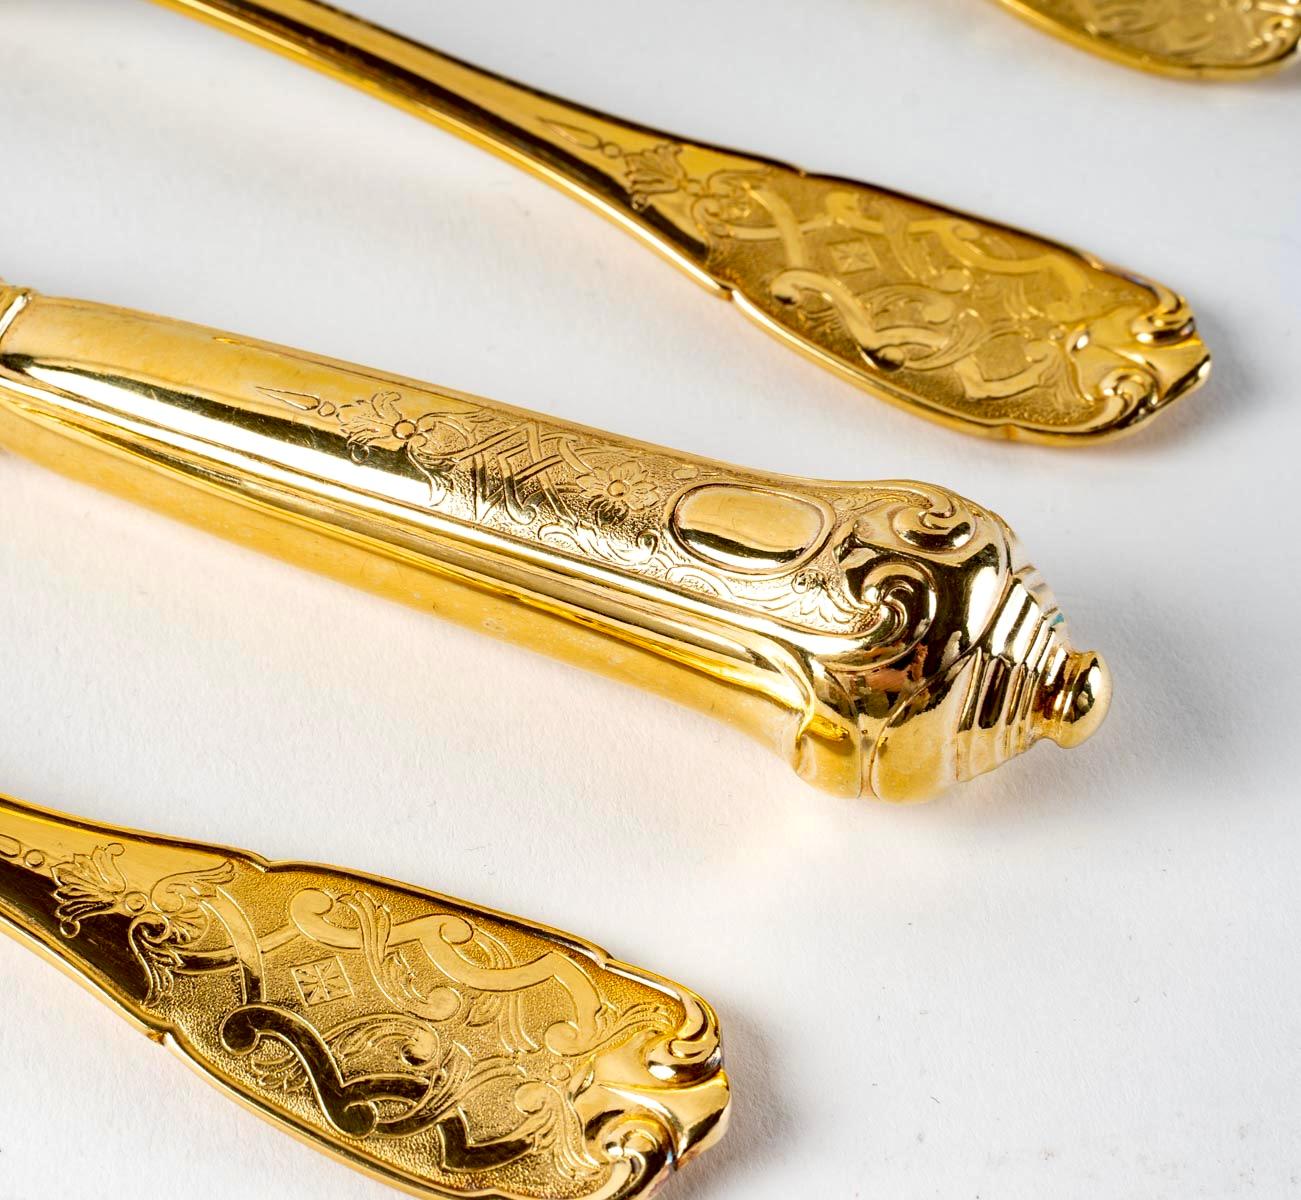 Puiforcat, Elysée Vermeil Gold Sterling Silver Flatware Cutlery Set, 70 Pieces 2